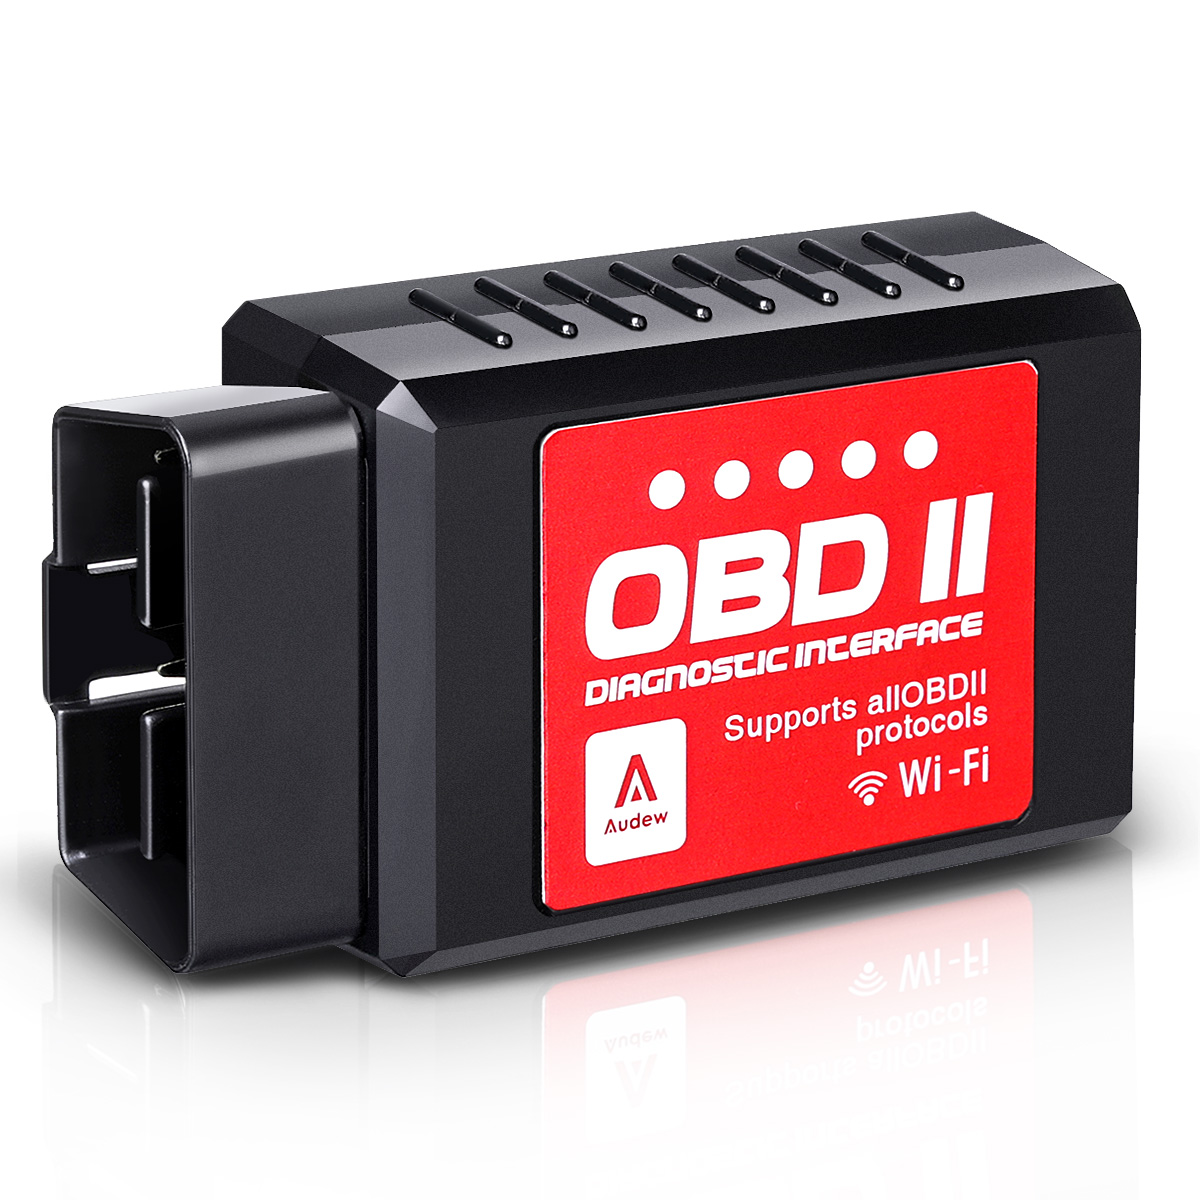 Espeedy ELM327 OBDII OBD2 Scanner Wifi Moteur de voiture testeur de diagnostic lecteur de code pour iPhone Android Système